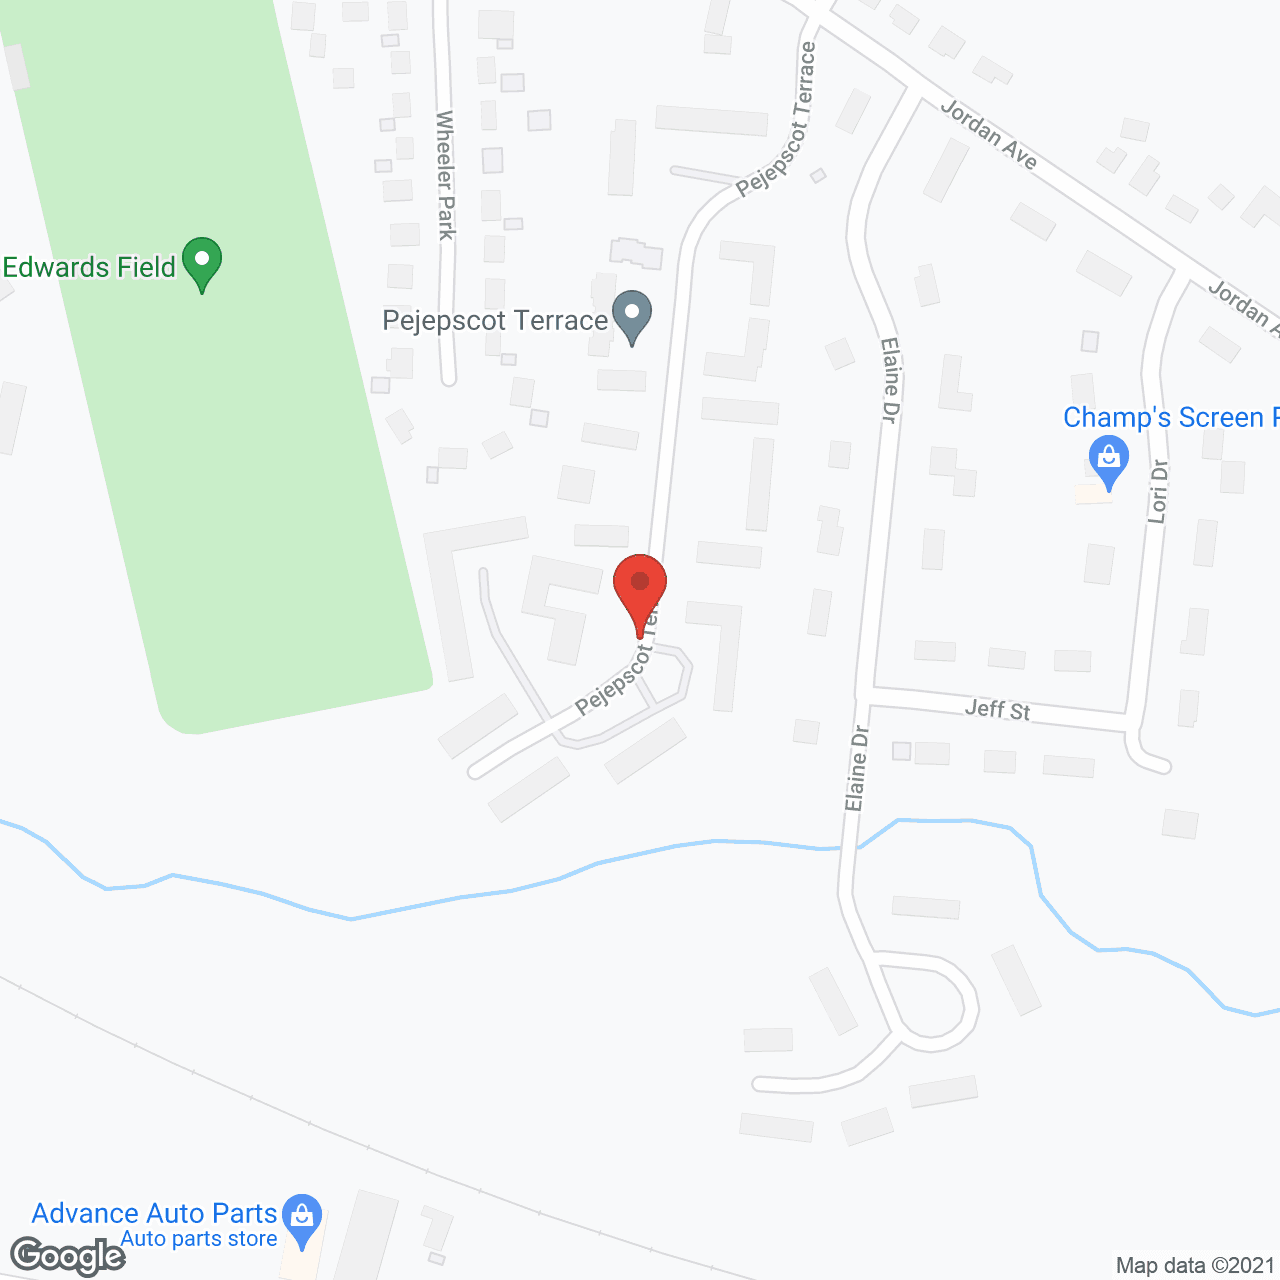 Pejepscot Terrace in google map